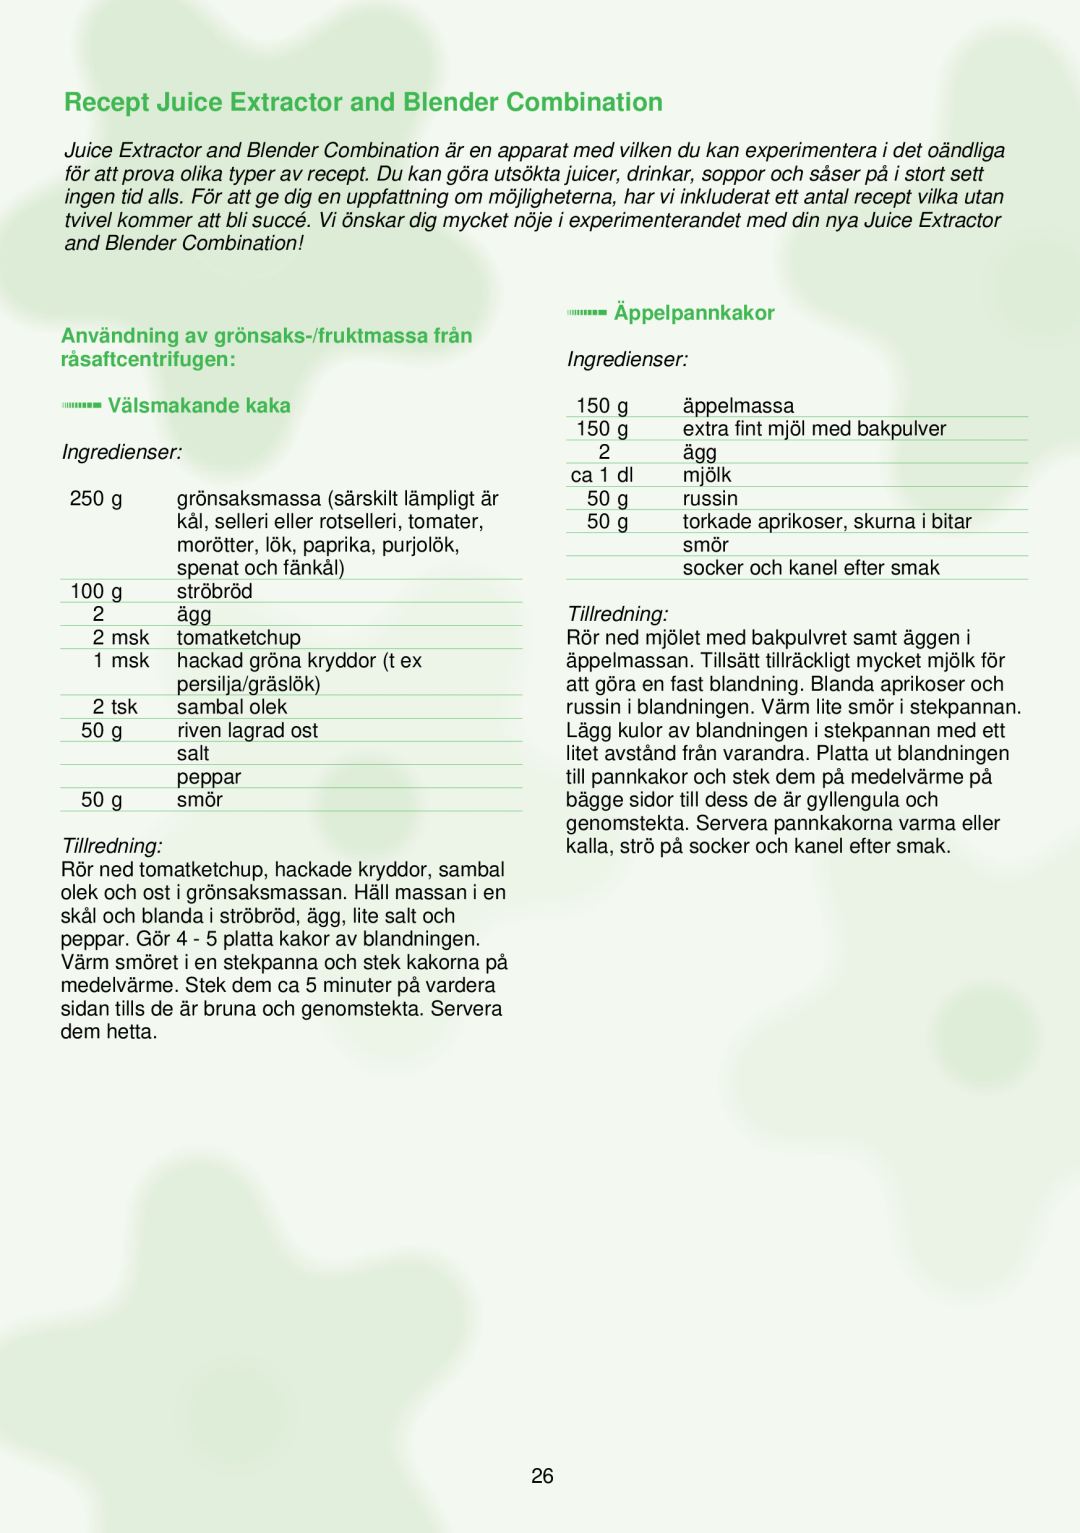 Philips HR1841 Recept Juice Extractor and Blender Combination, Användning av grönsaks-/fruktmassa från råsaftcentrifugen 